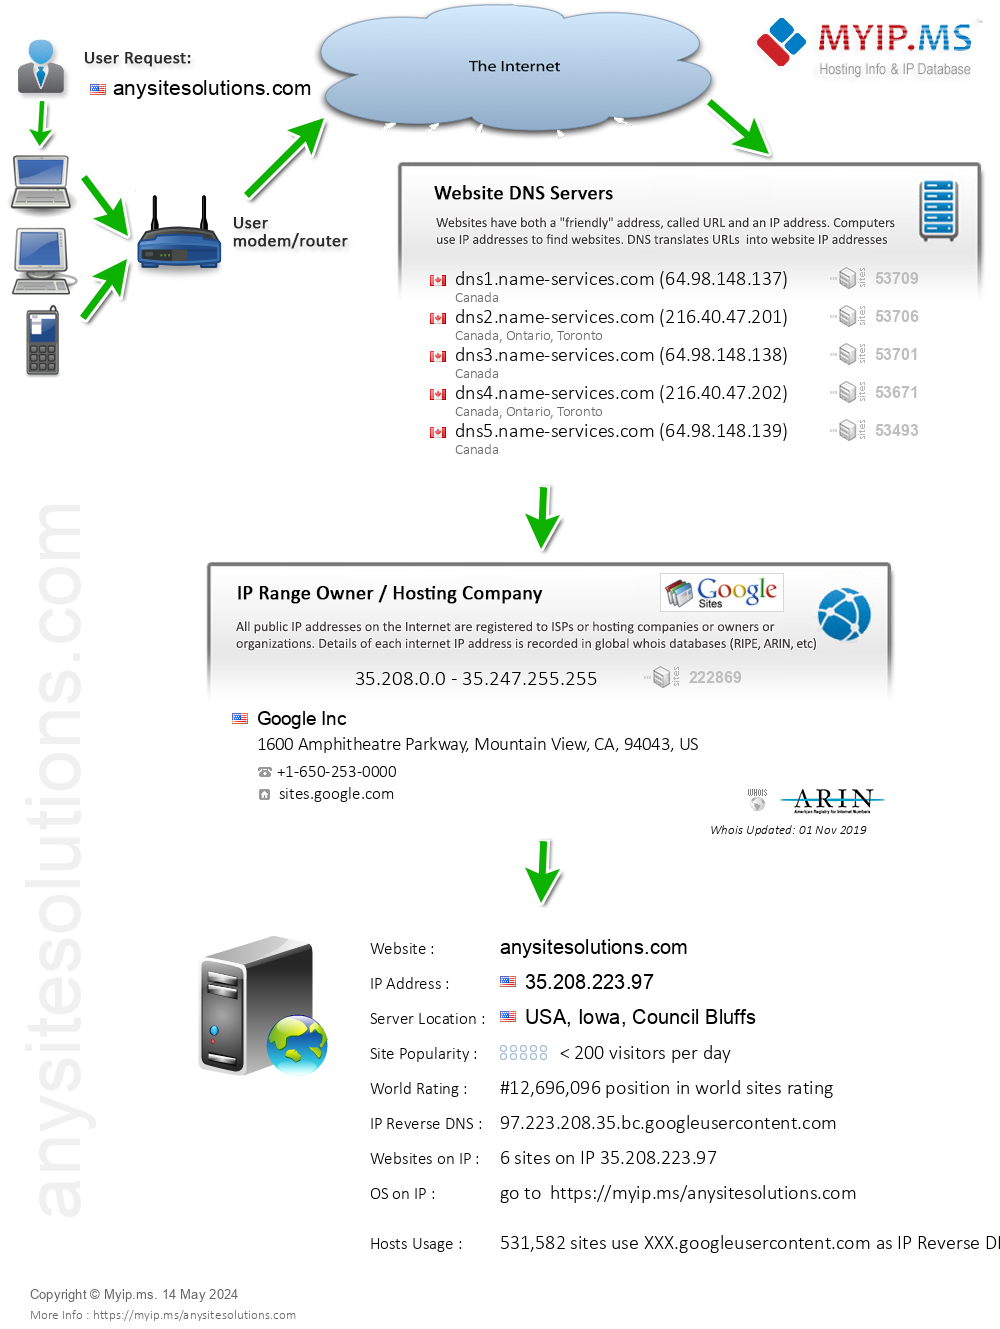 Anysitesolutions.com - Website Hosting Visual IP Diagram